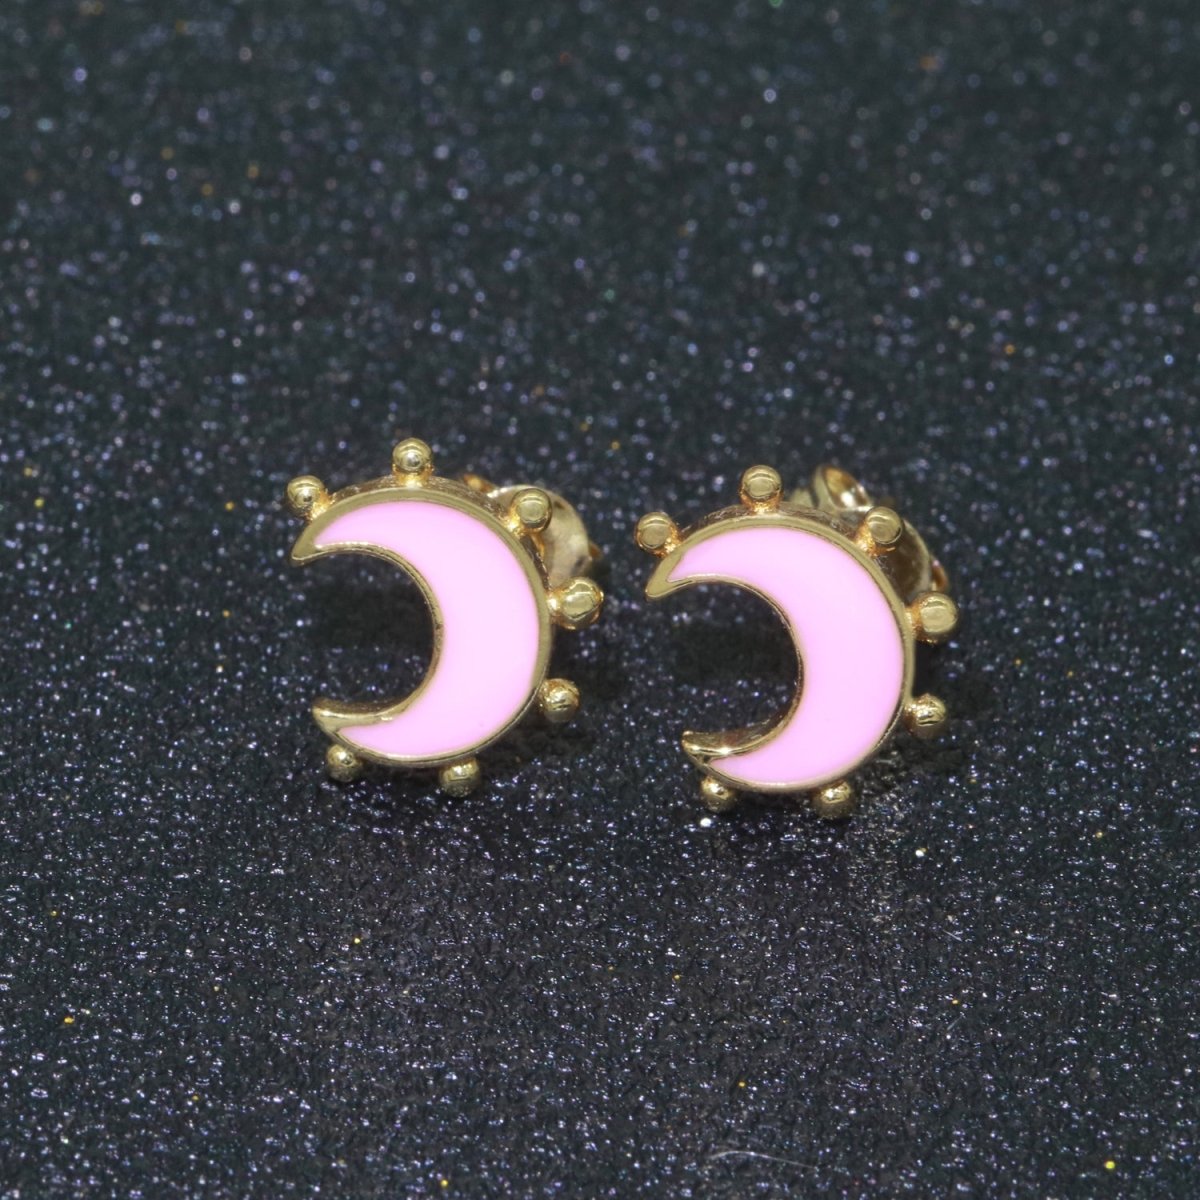 Moon Enamel Stud Earrings Gold Filled Cute Small Celestial Jewelry Hypoallergenic Stud Earrings for Women And Girls T-052~T-057 - DLUXCA